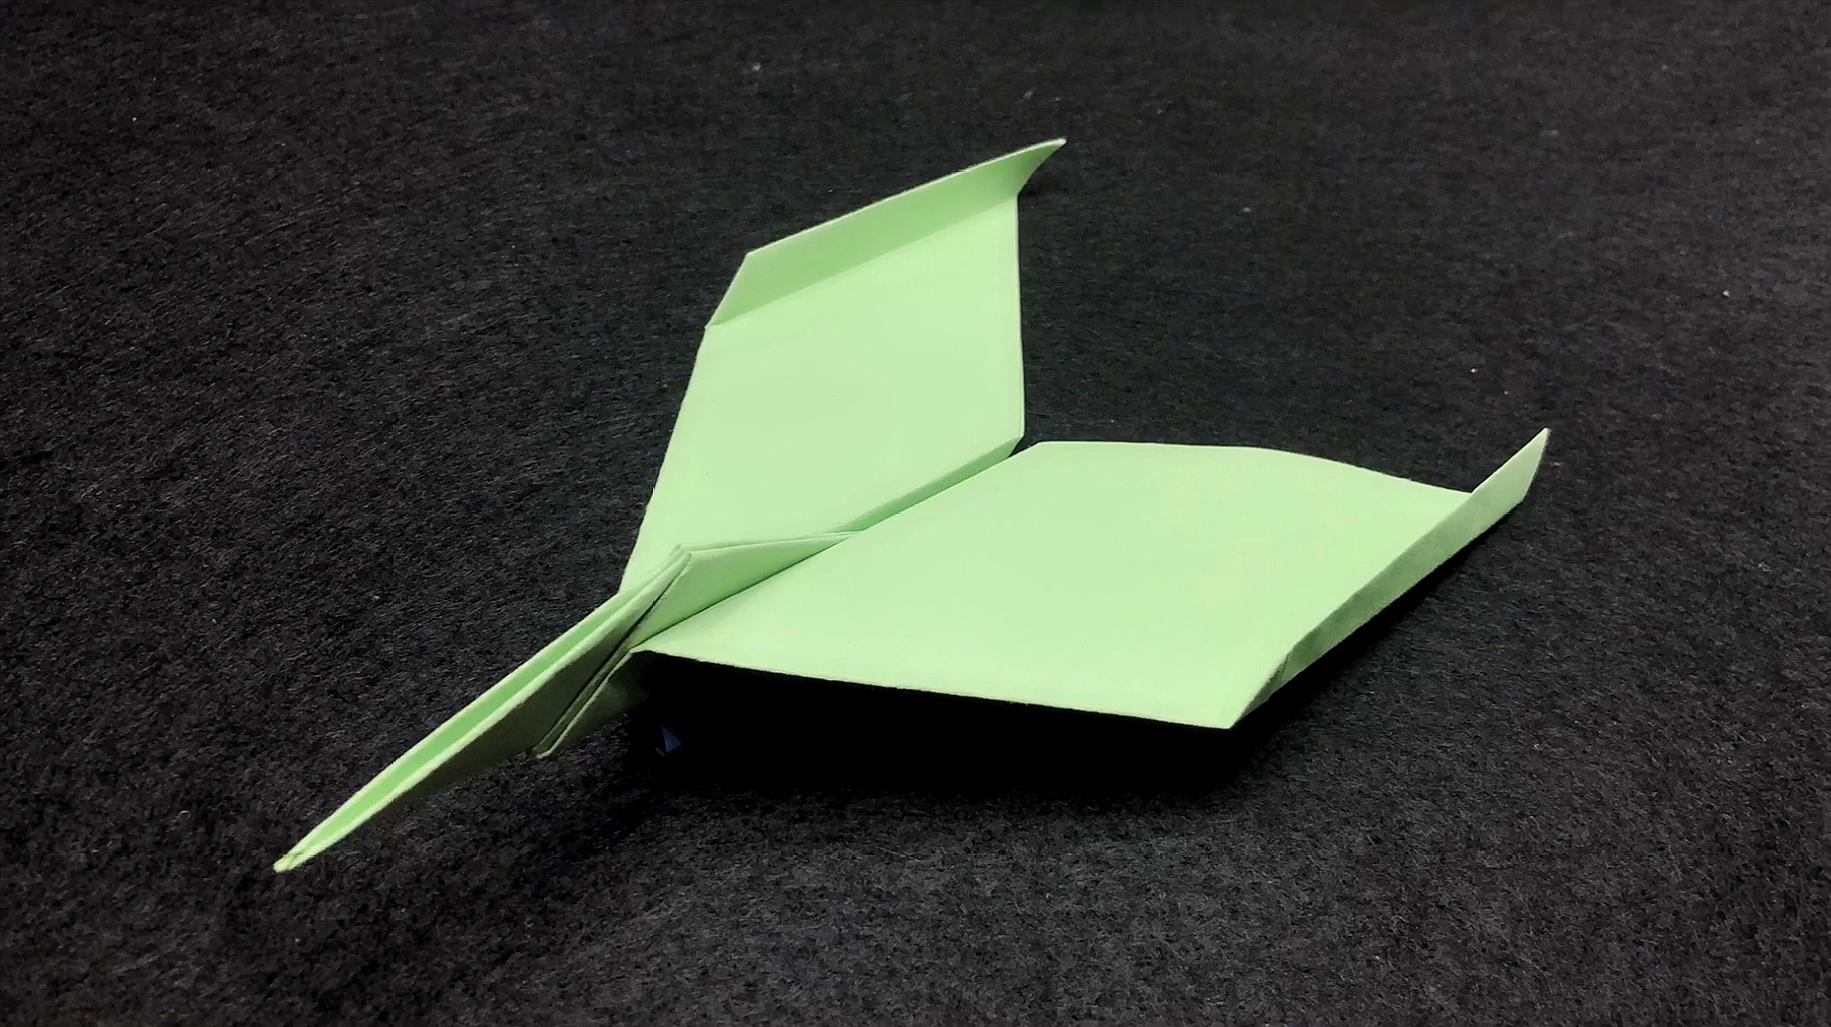 13折纸教程:又简单又好看的纸飞机,步骤详细  03:13  来源:好看视频